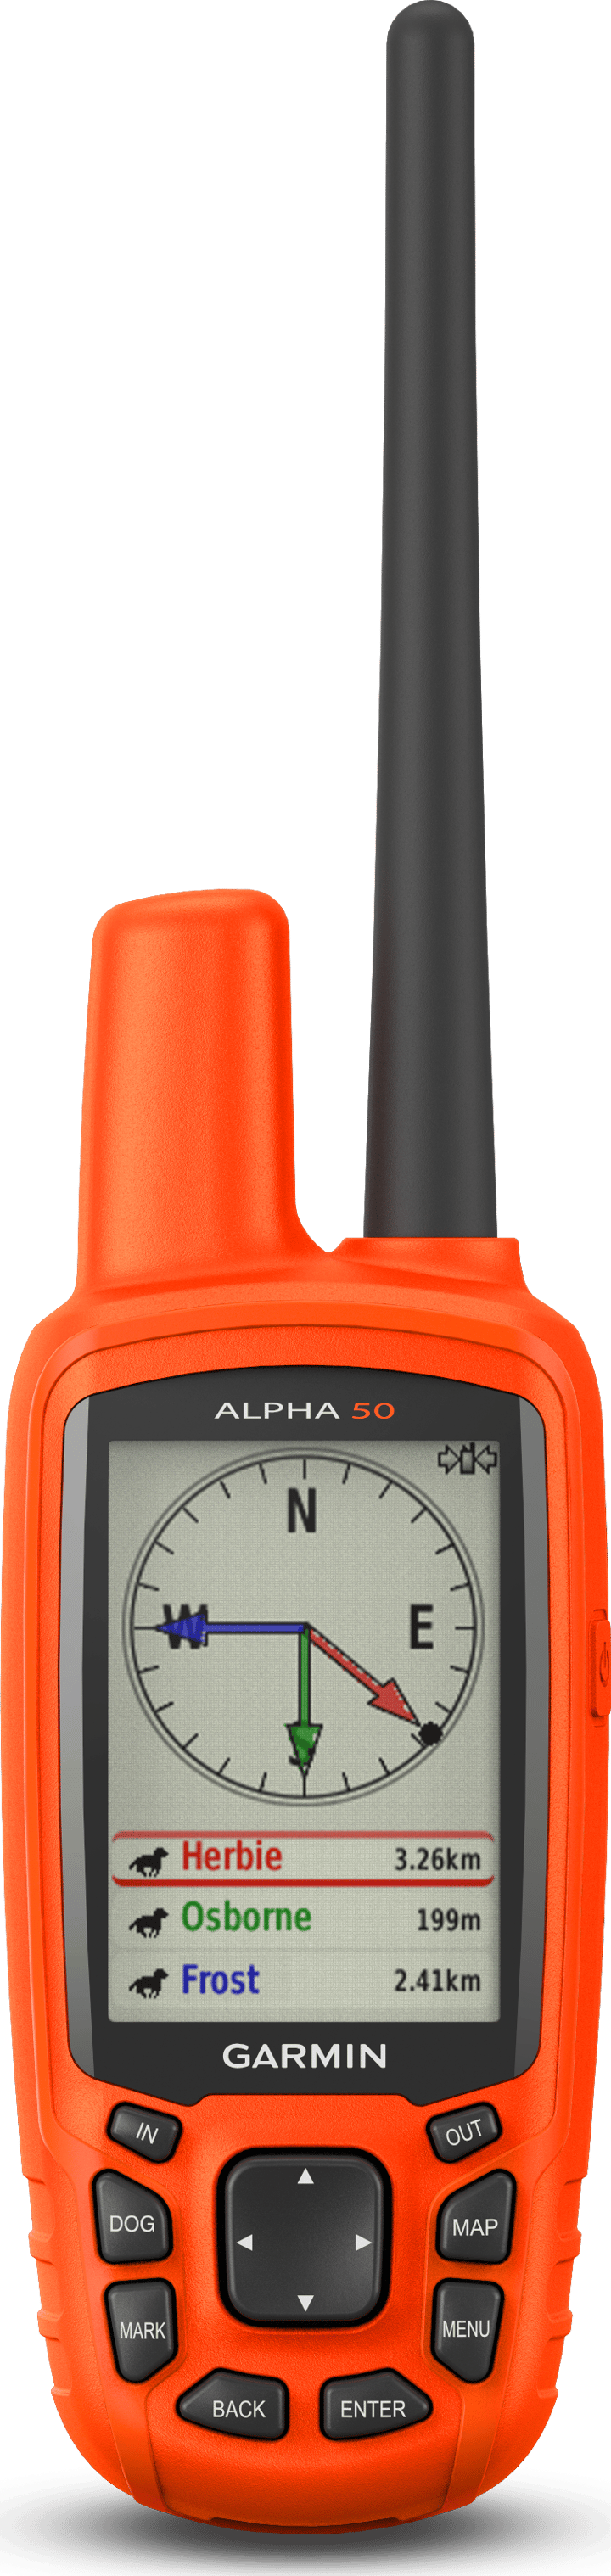 Alpha 50 Garmin